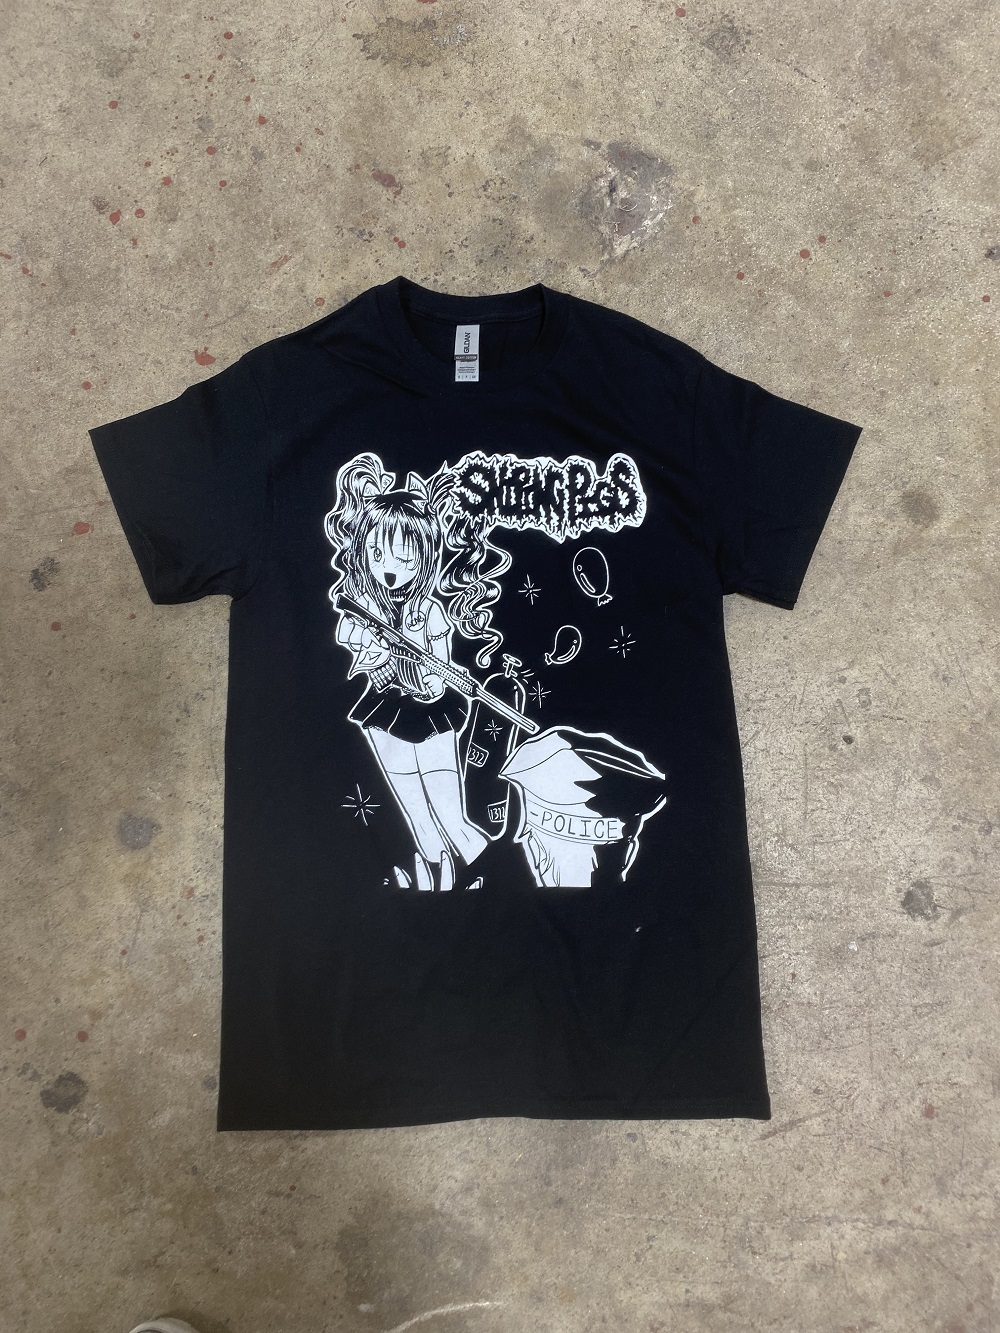 Sniping Pig - Mincess Shirt (SMALL)